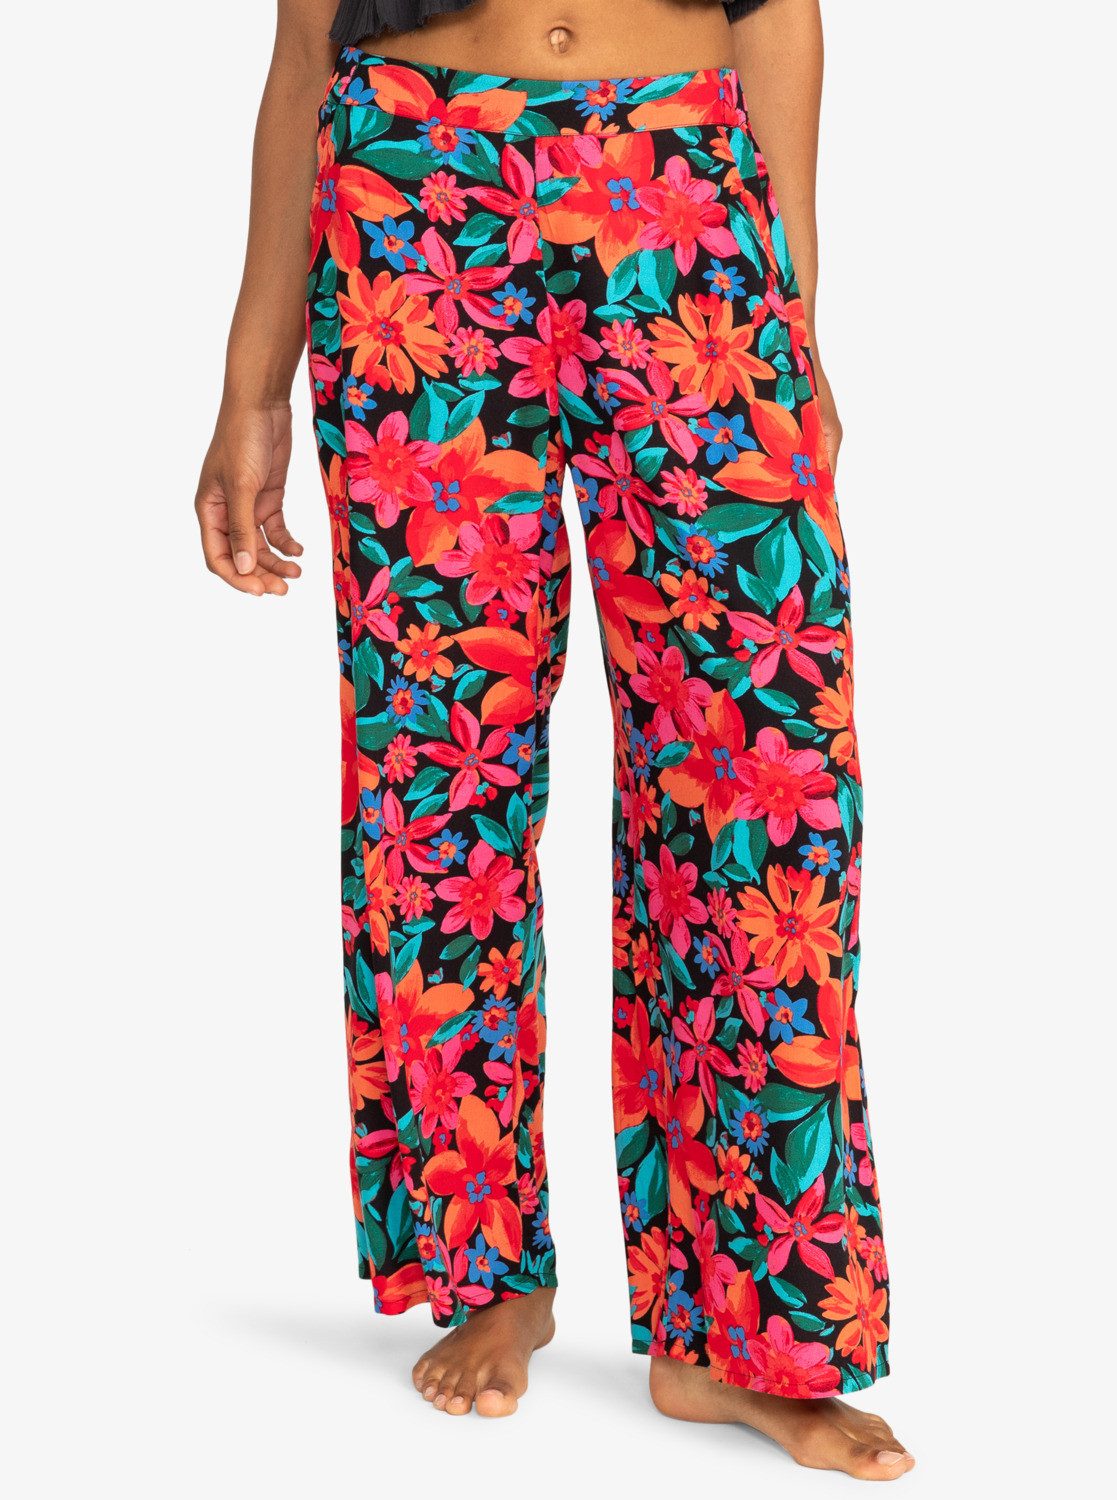 Roxy Strandhose Midnight Avenue - Bedruckte Hose mit weiten Hosenbeinen für Frauen